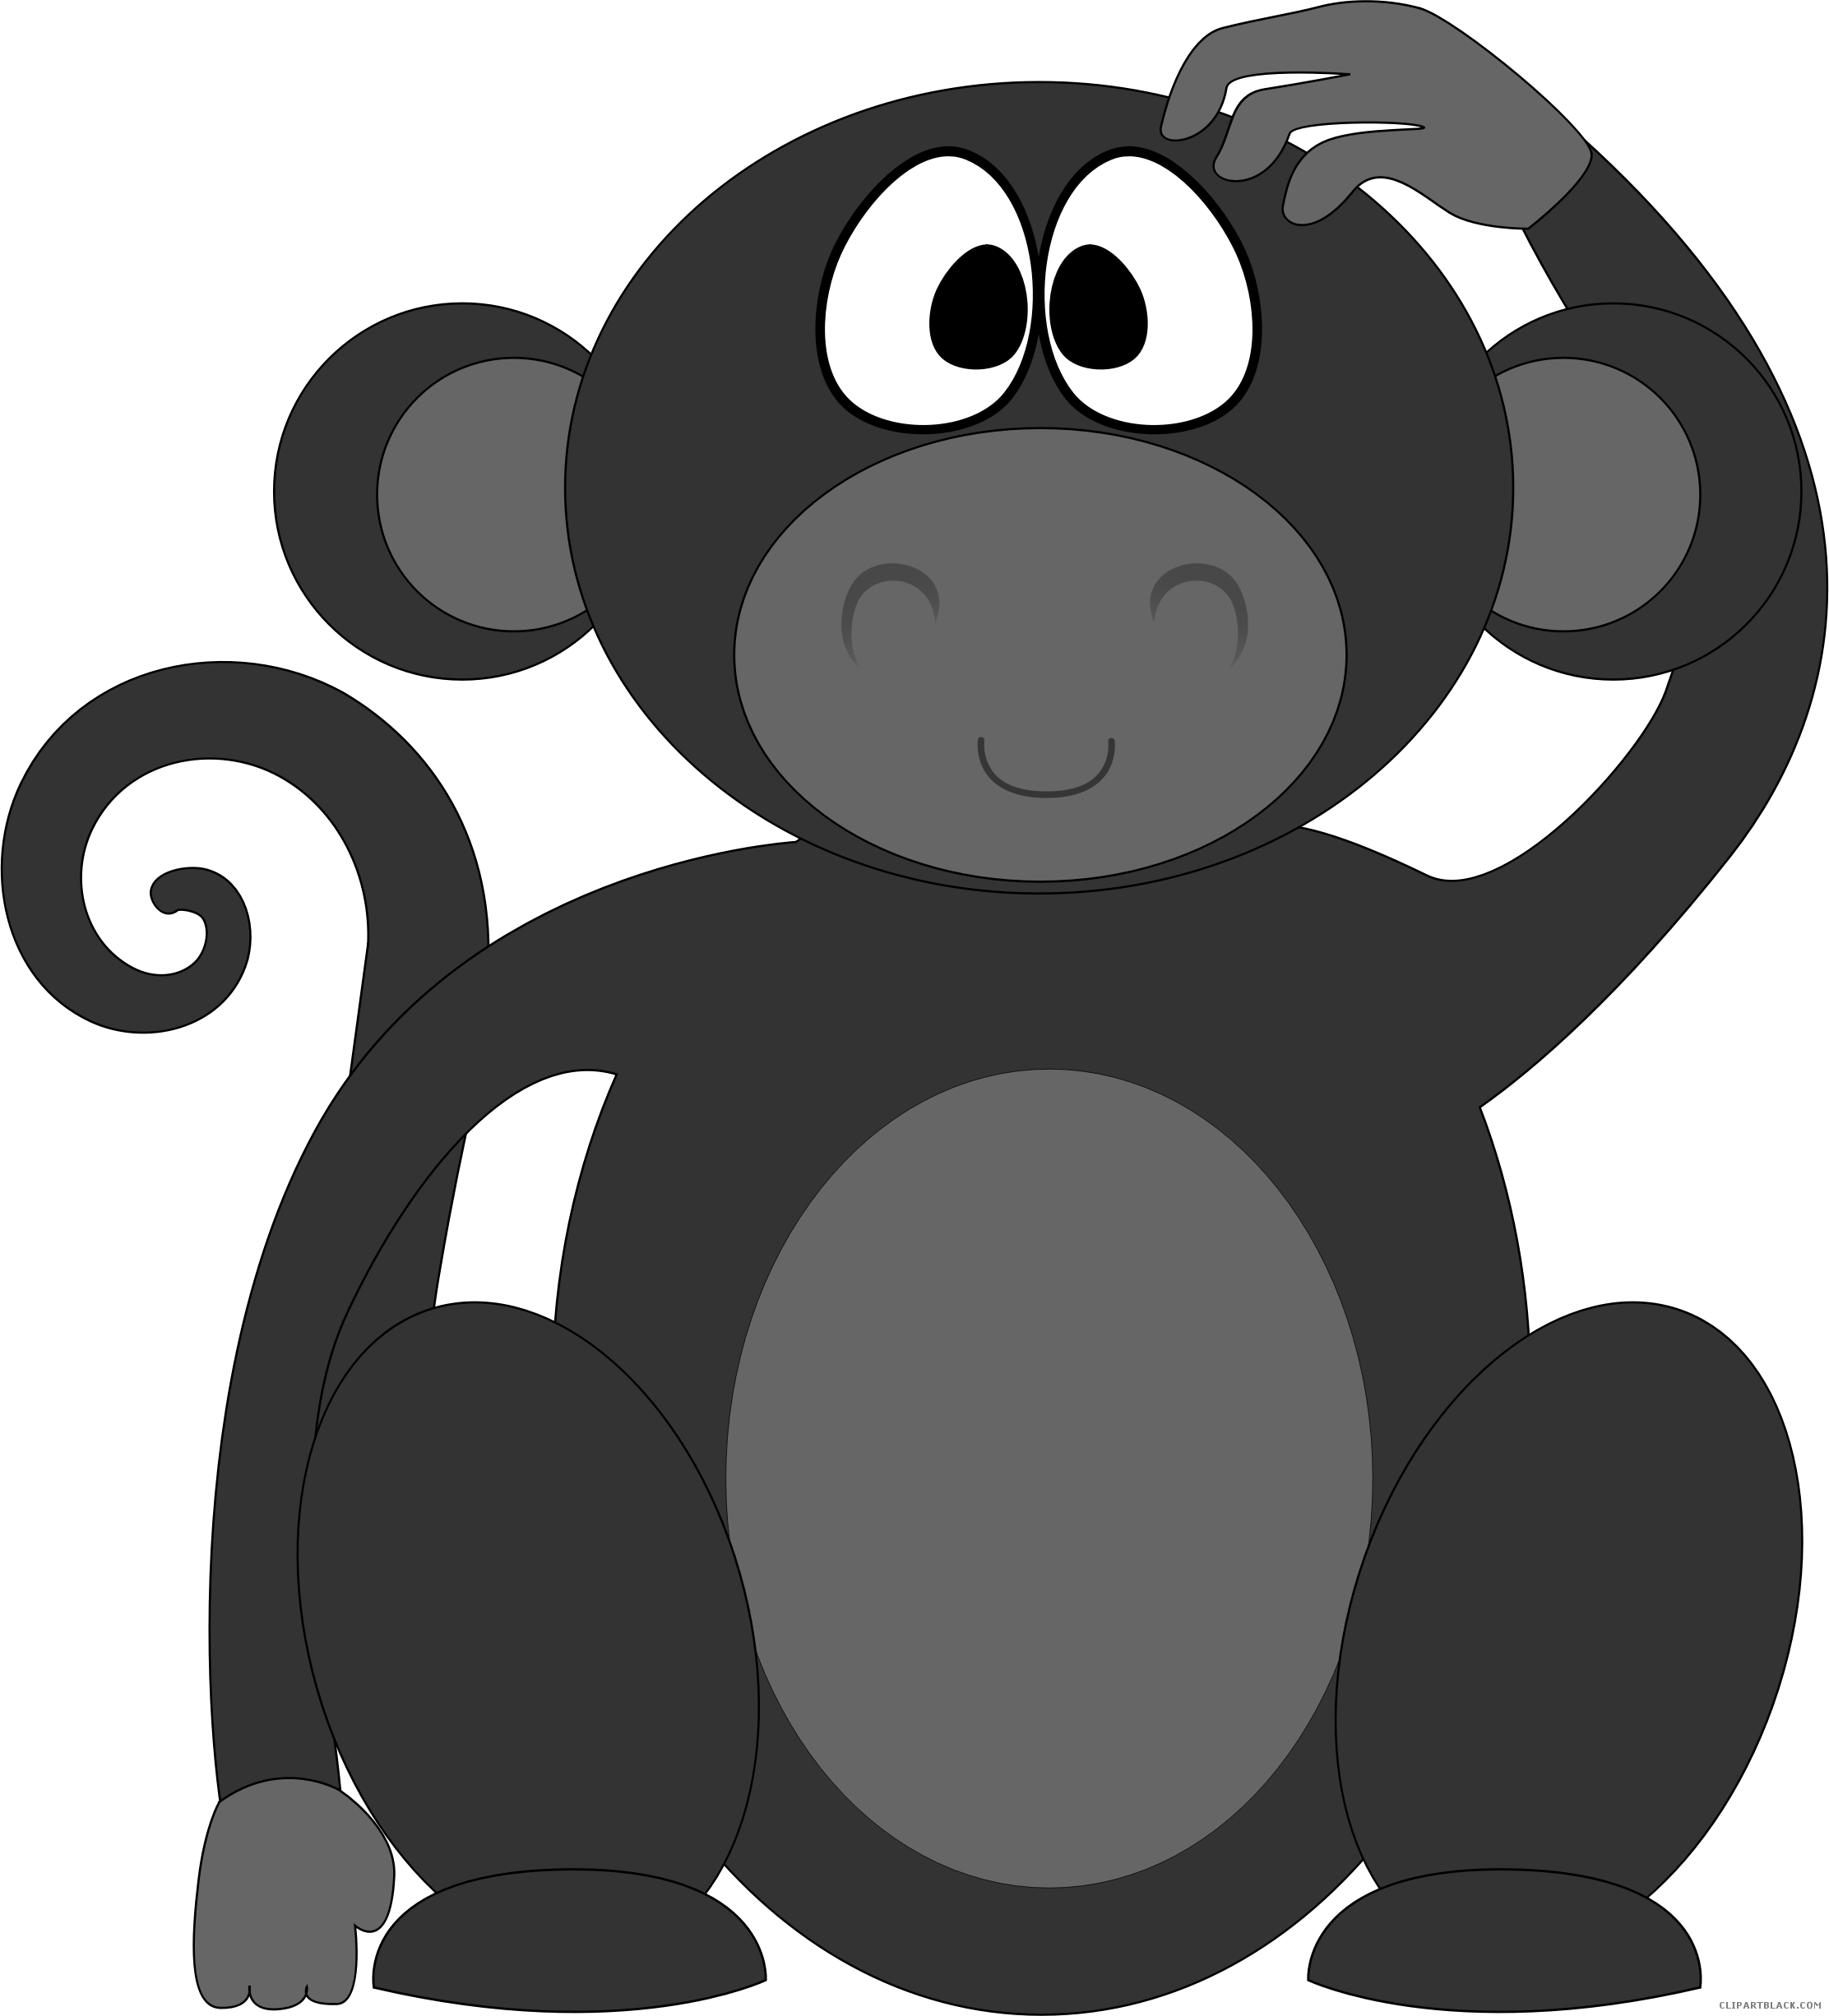 Cartoon Monkey Animal Free Black White Clipart Images - Cartoon Monkey Cartoon Monkey Oval Ornament (2224x2452)